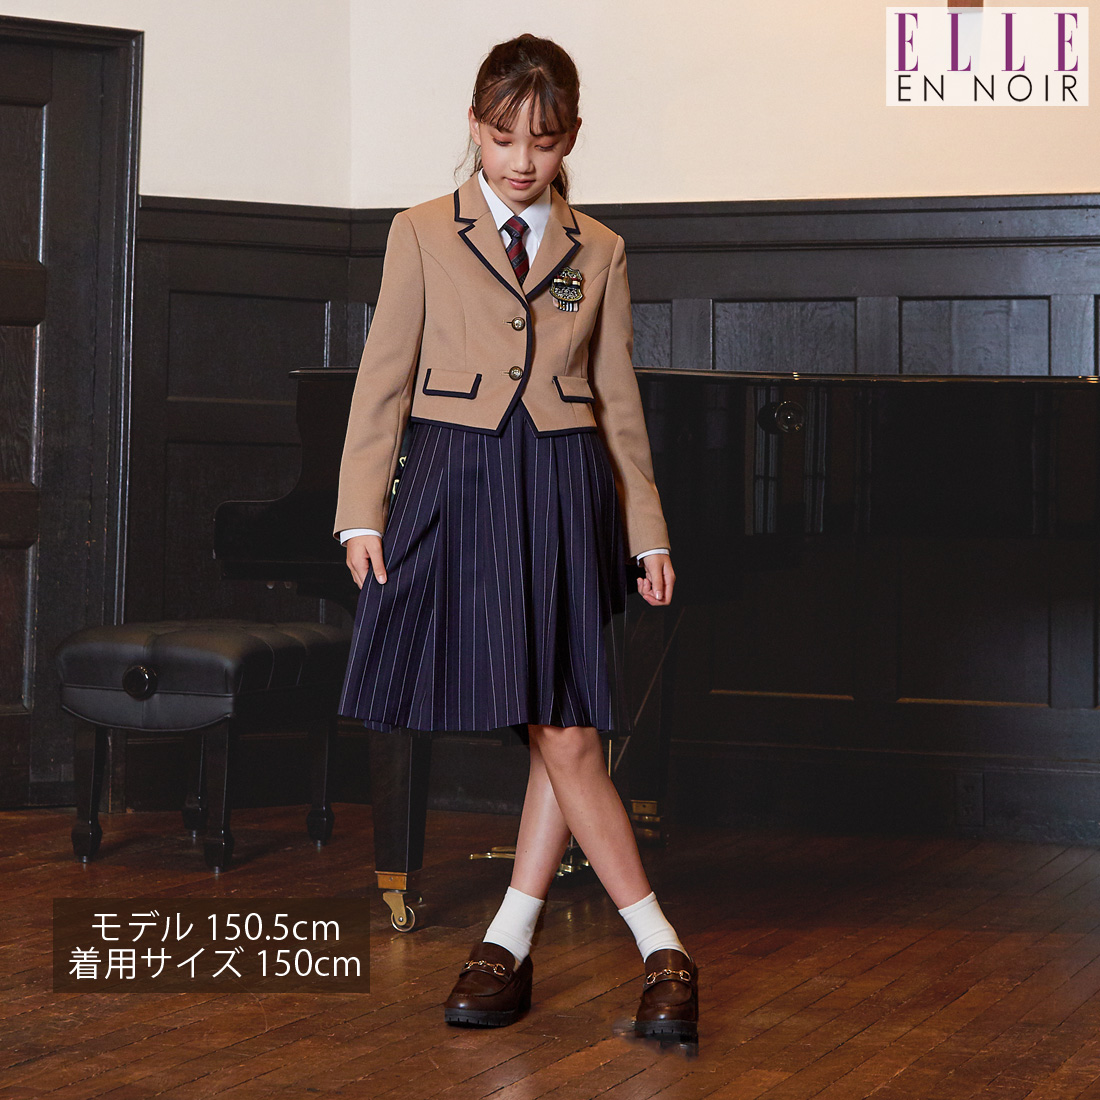 楽天市場卒業式 スーツ 女の子 小学生 プレッピージャンパースカート